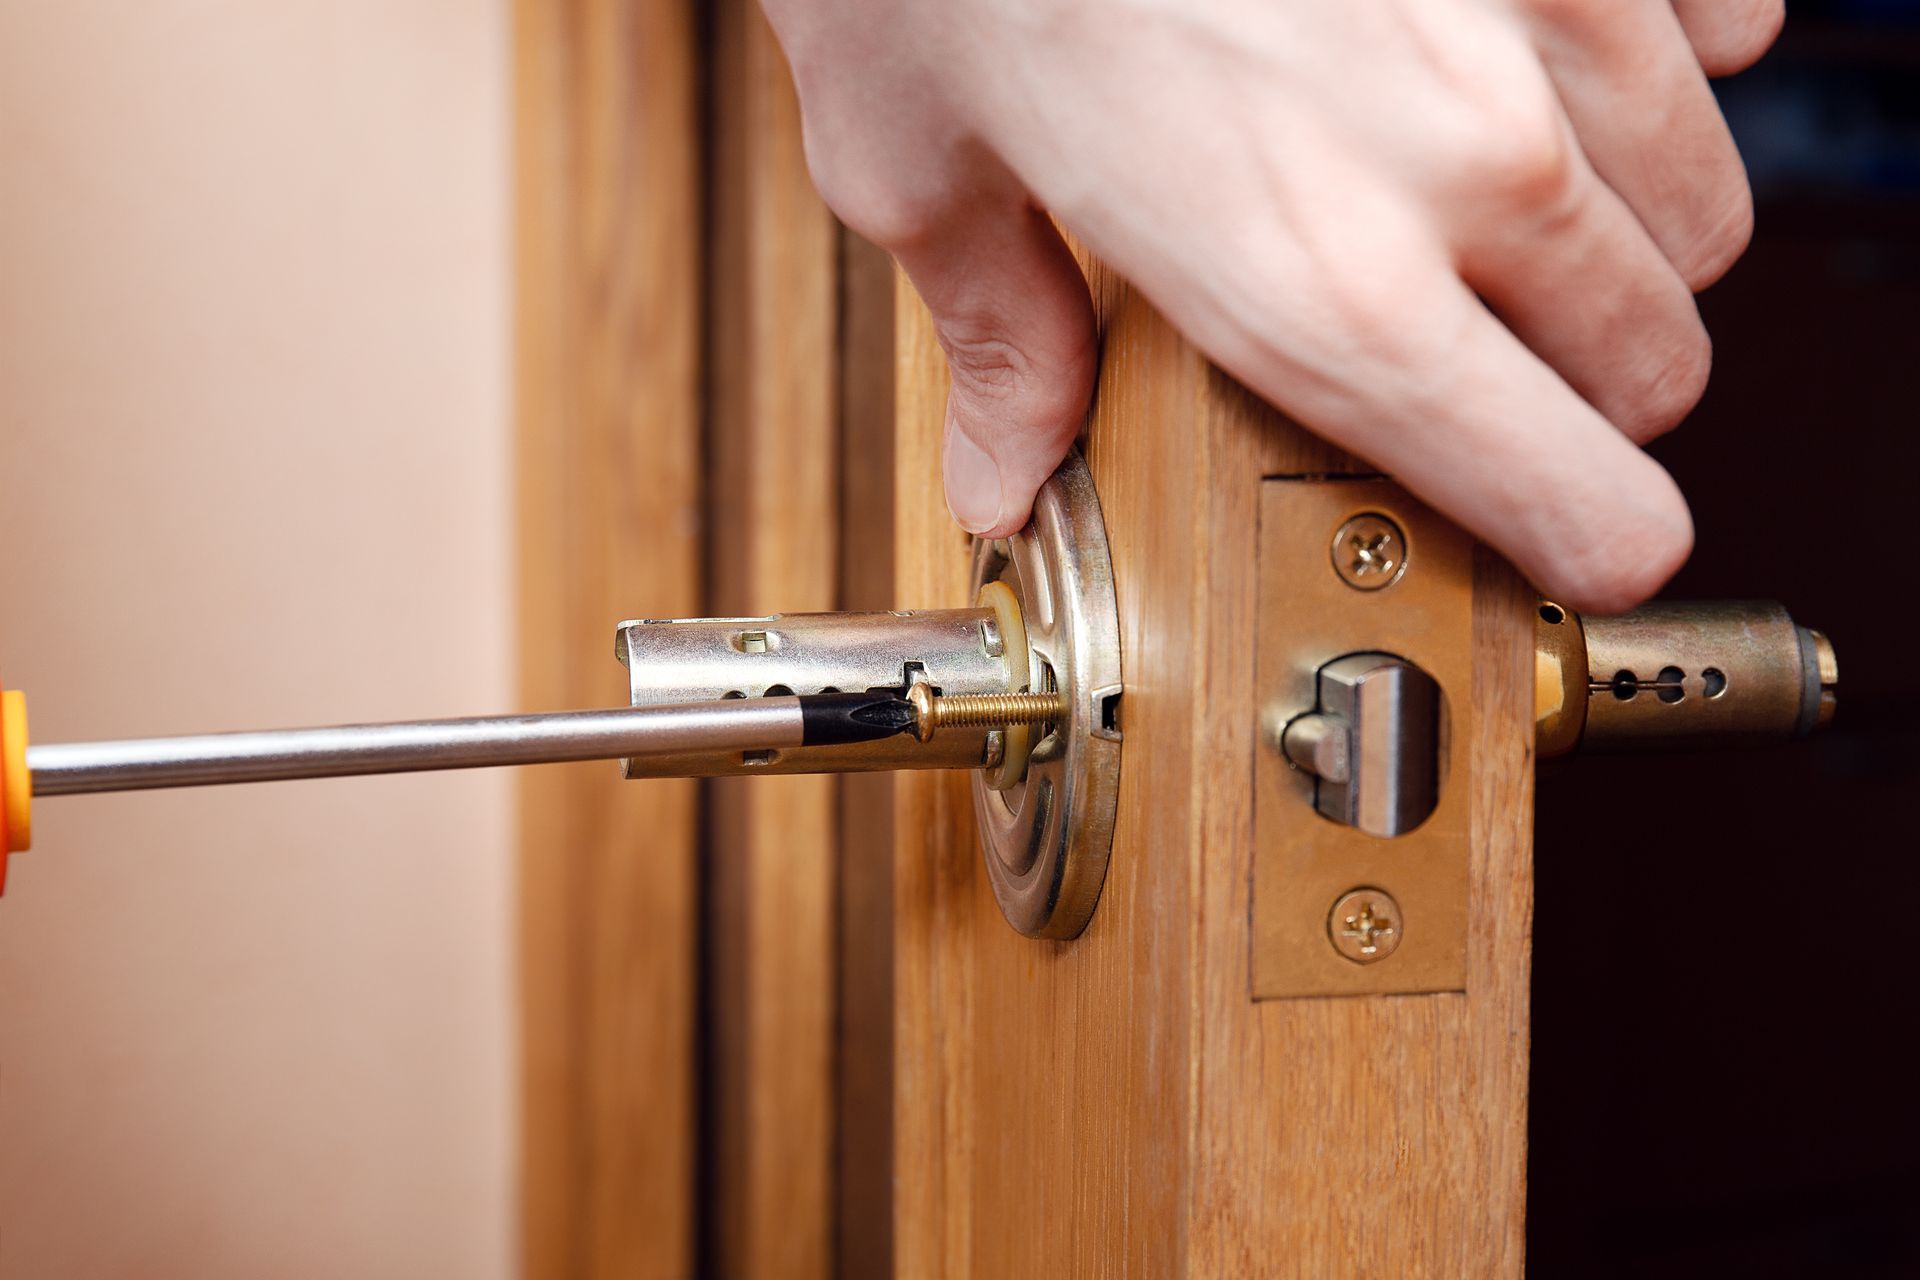 A worker installs a door knob in a door.